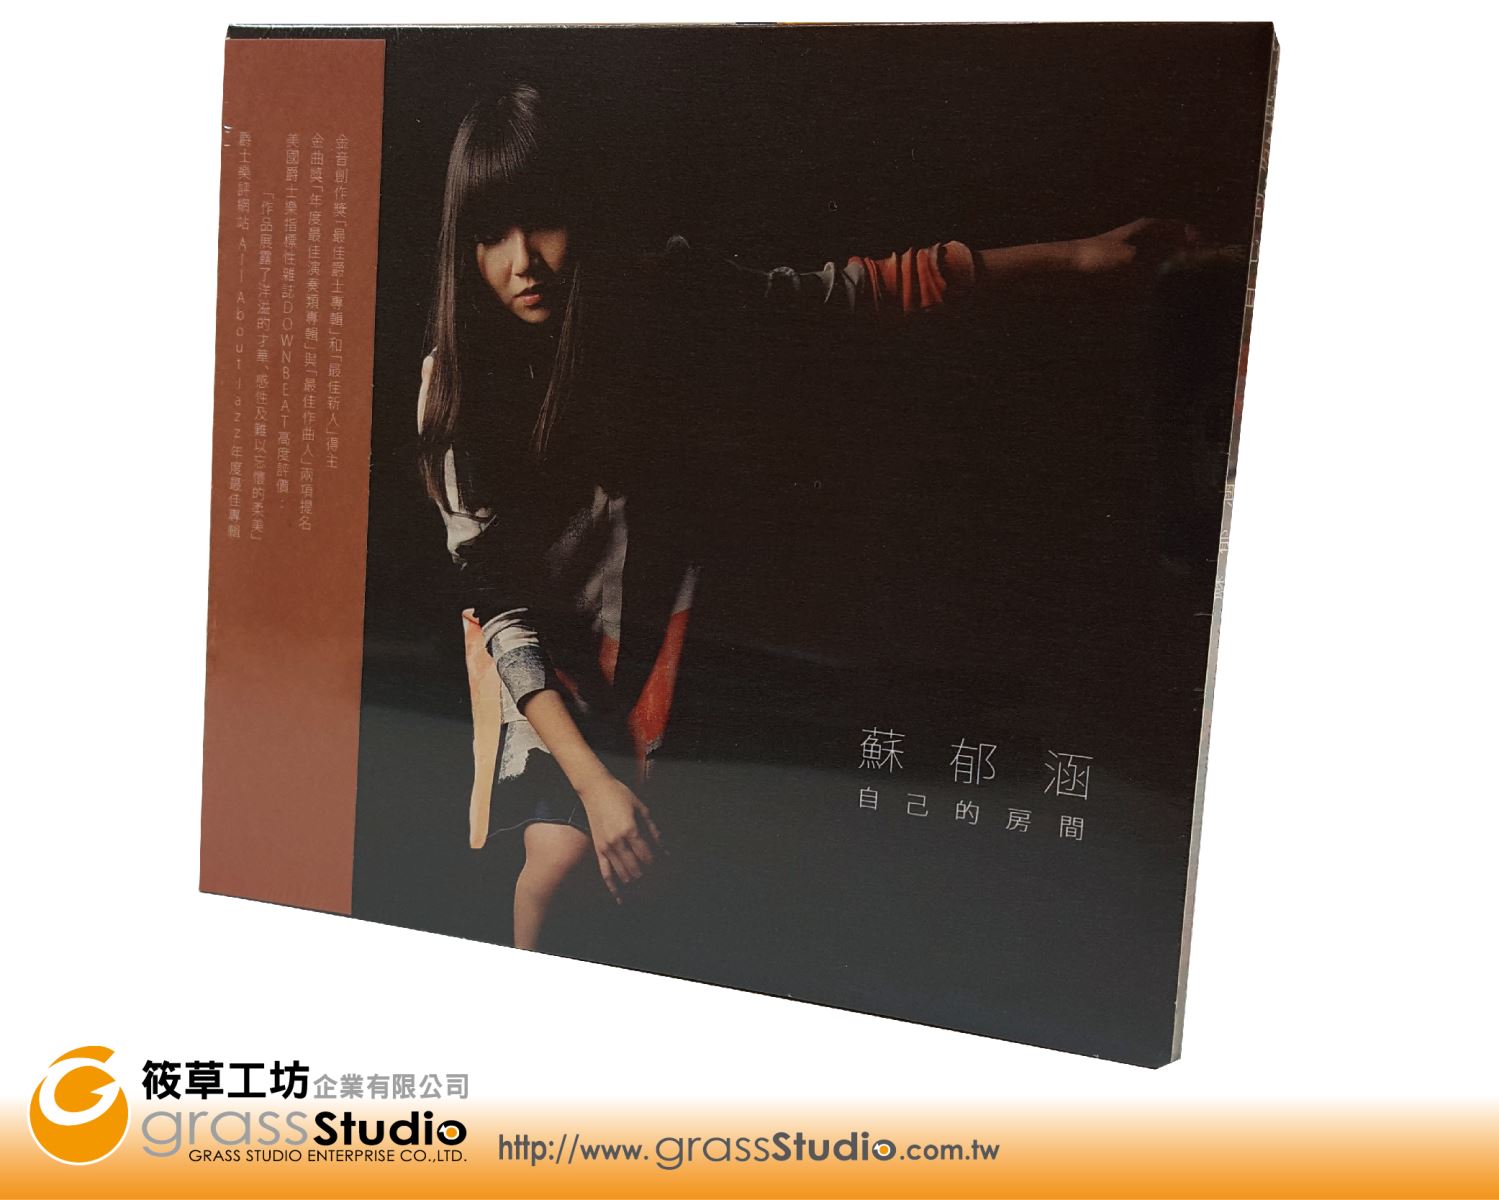 蘇郁涵-自己的房間專輯特別版封套